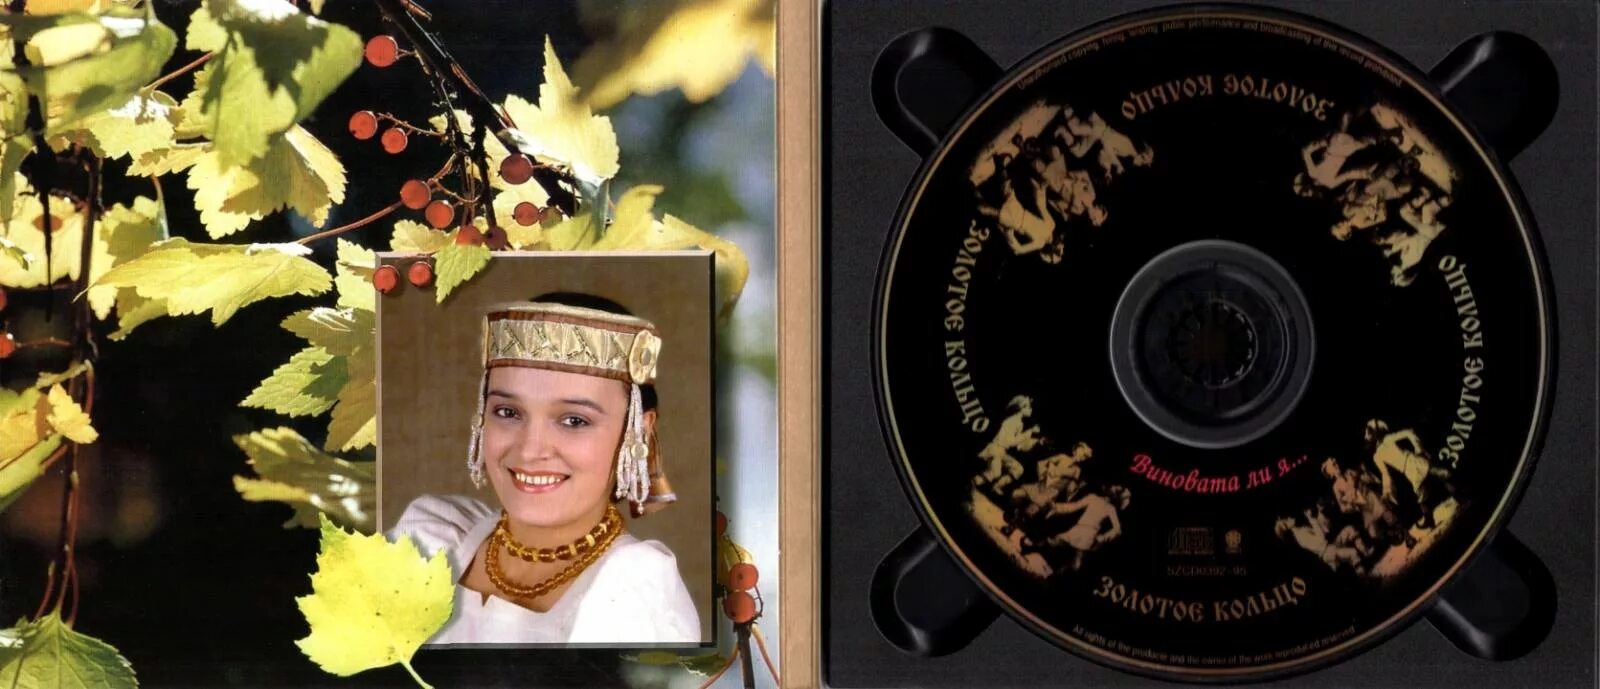 Яблонька кадышева. Кадышева золотое кольцо LP 1991 винил.